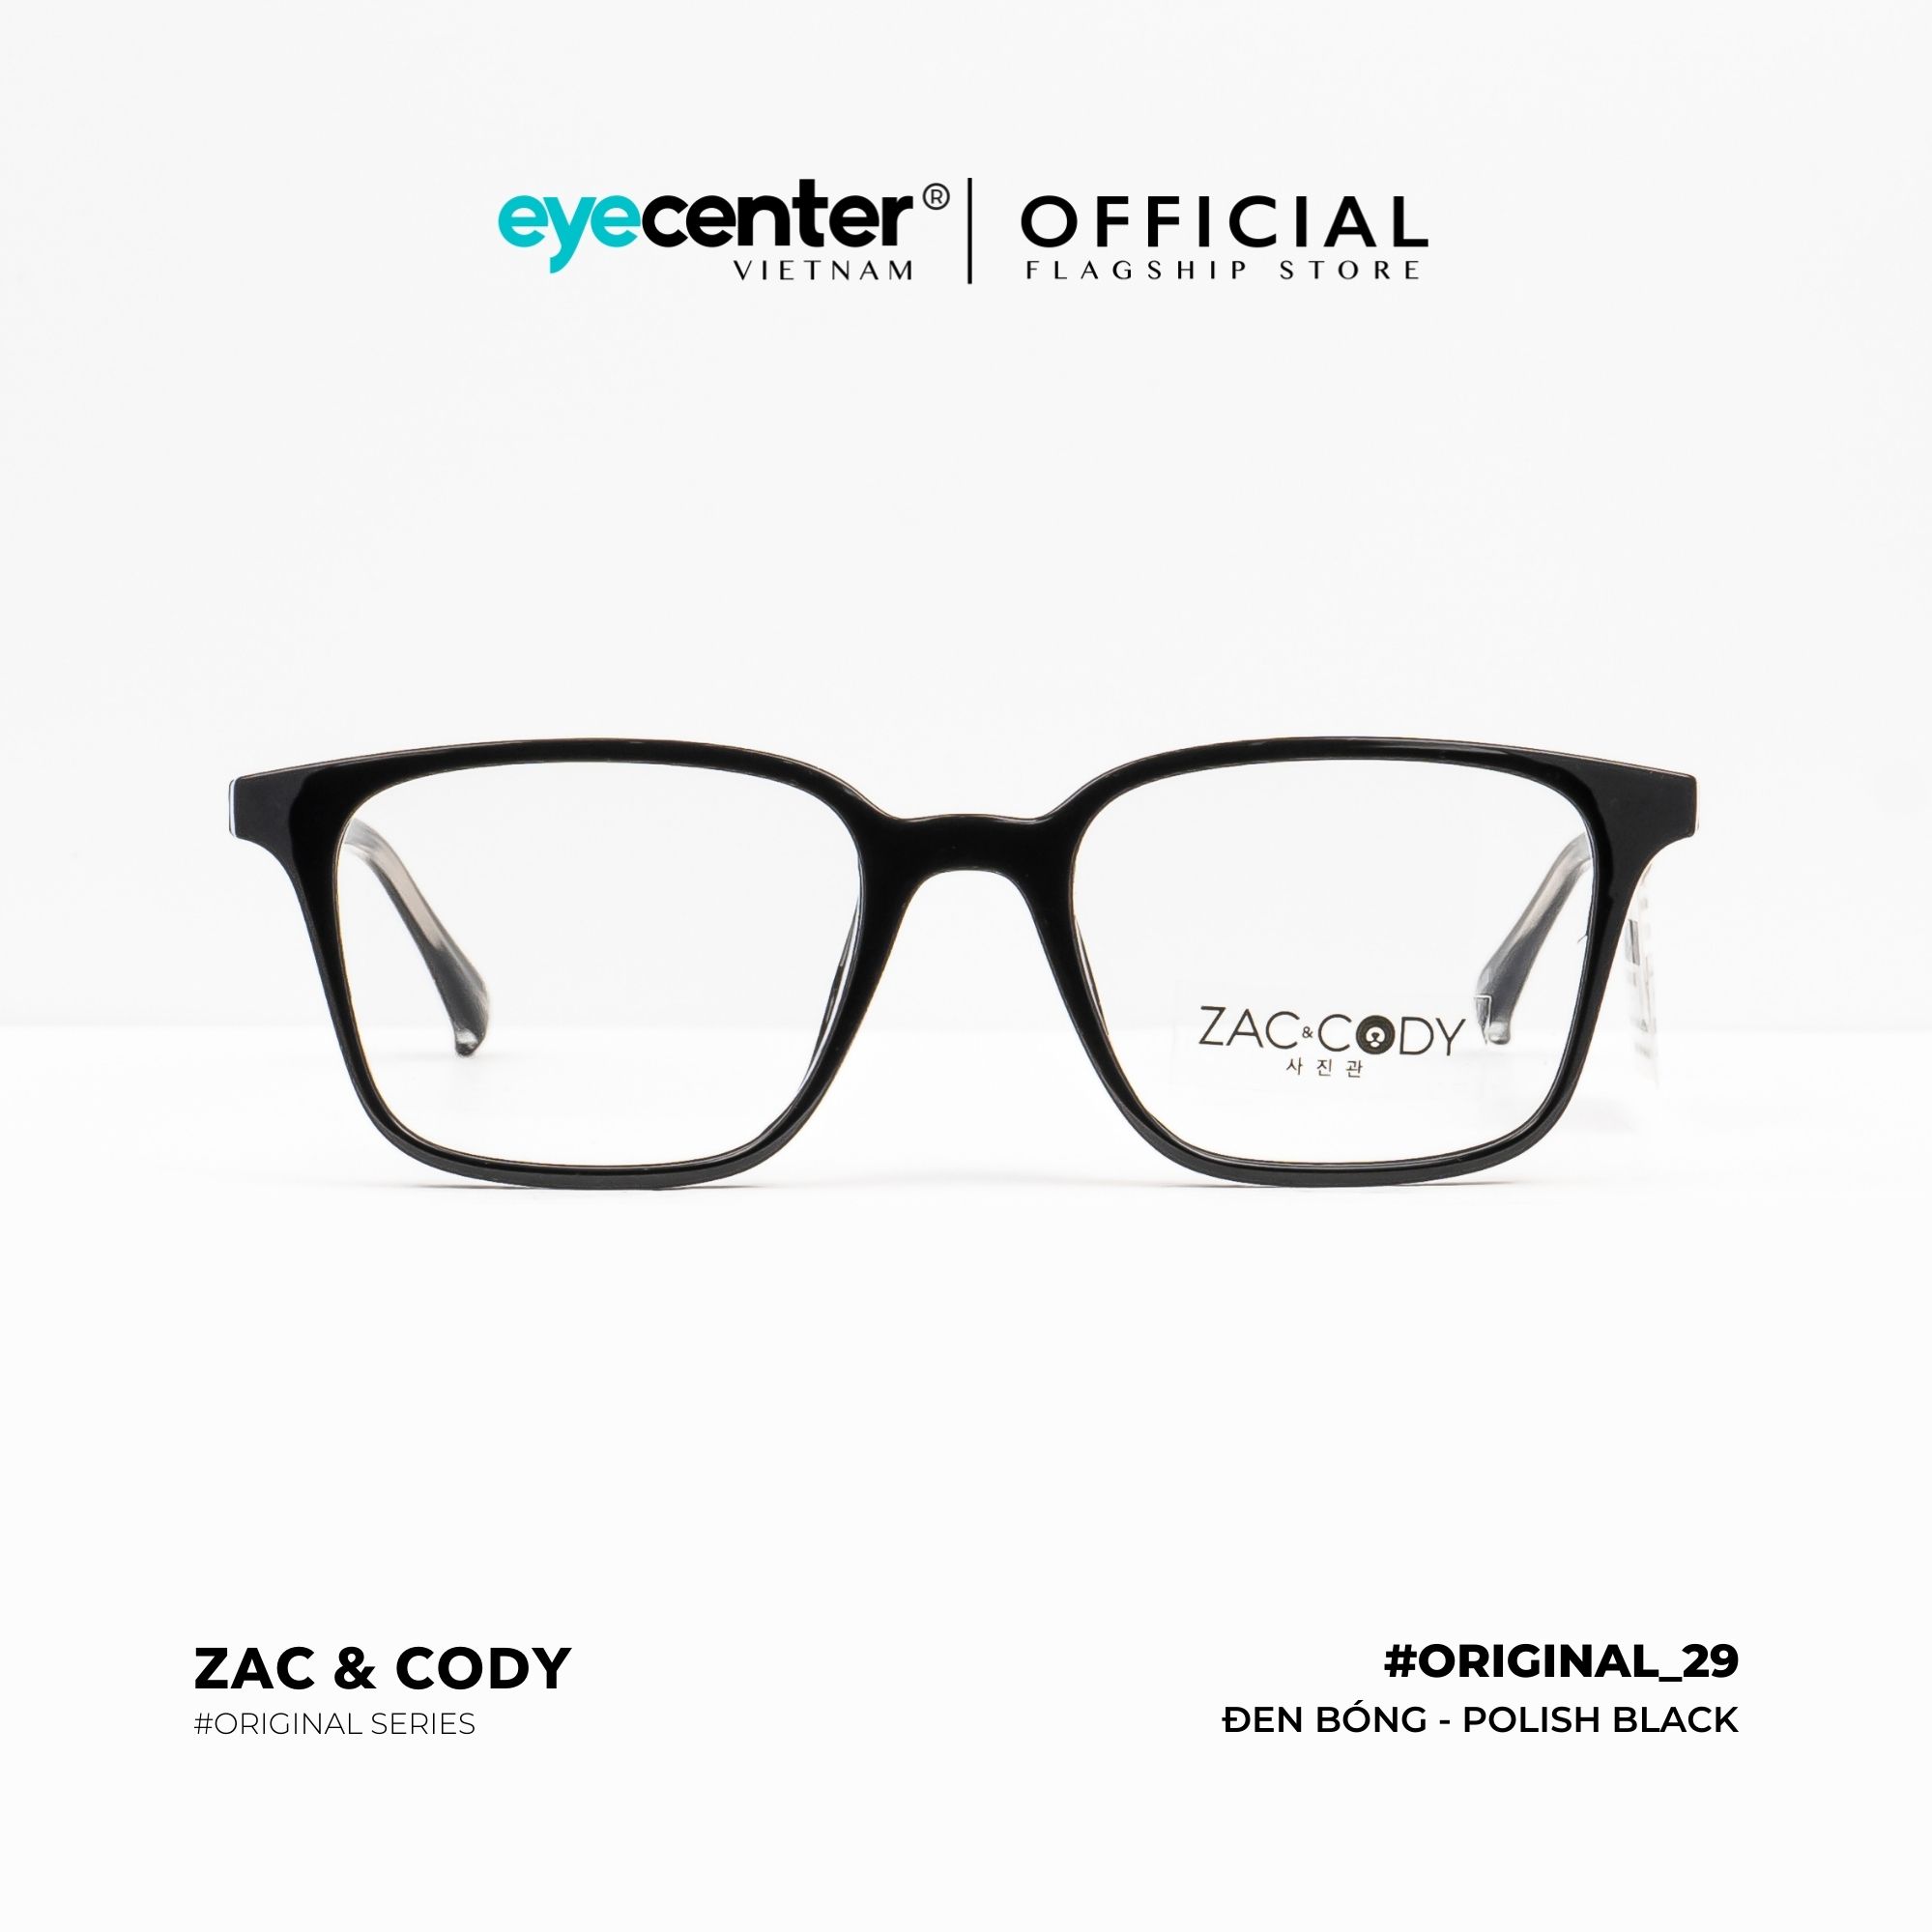 Gọng kính cận nam nữ chính hãng ZAC & CODY B29-S lõi thép chống gãy nhập khẩu by Eye Center Vietnam